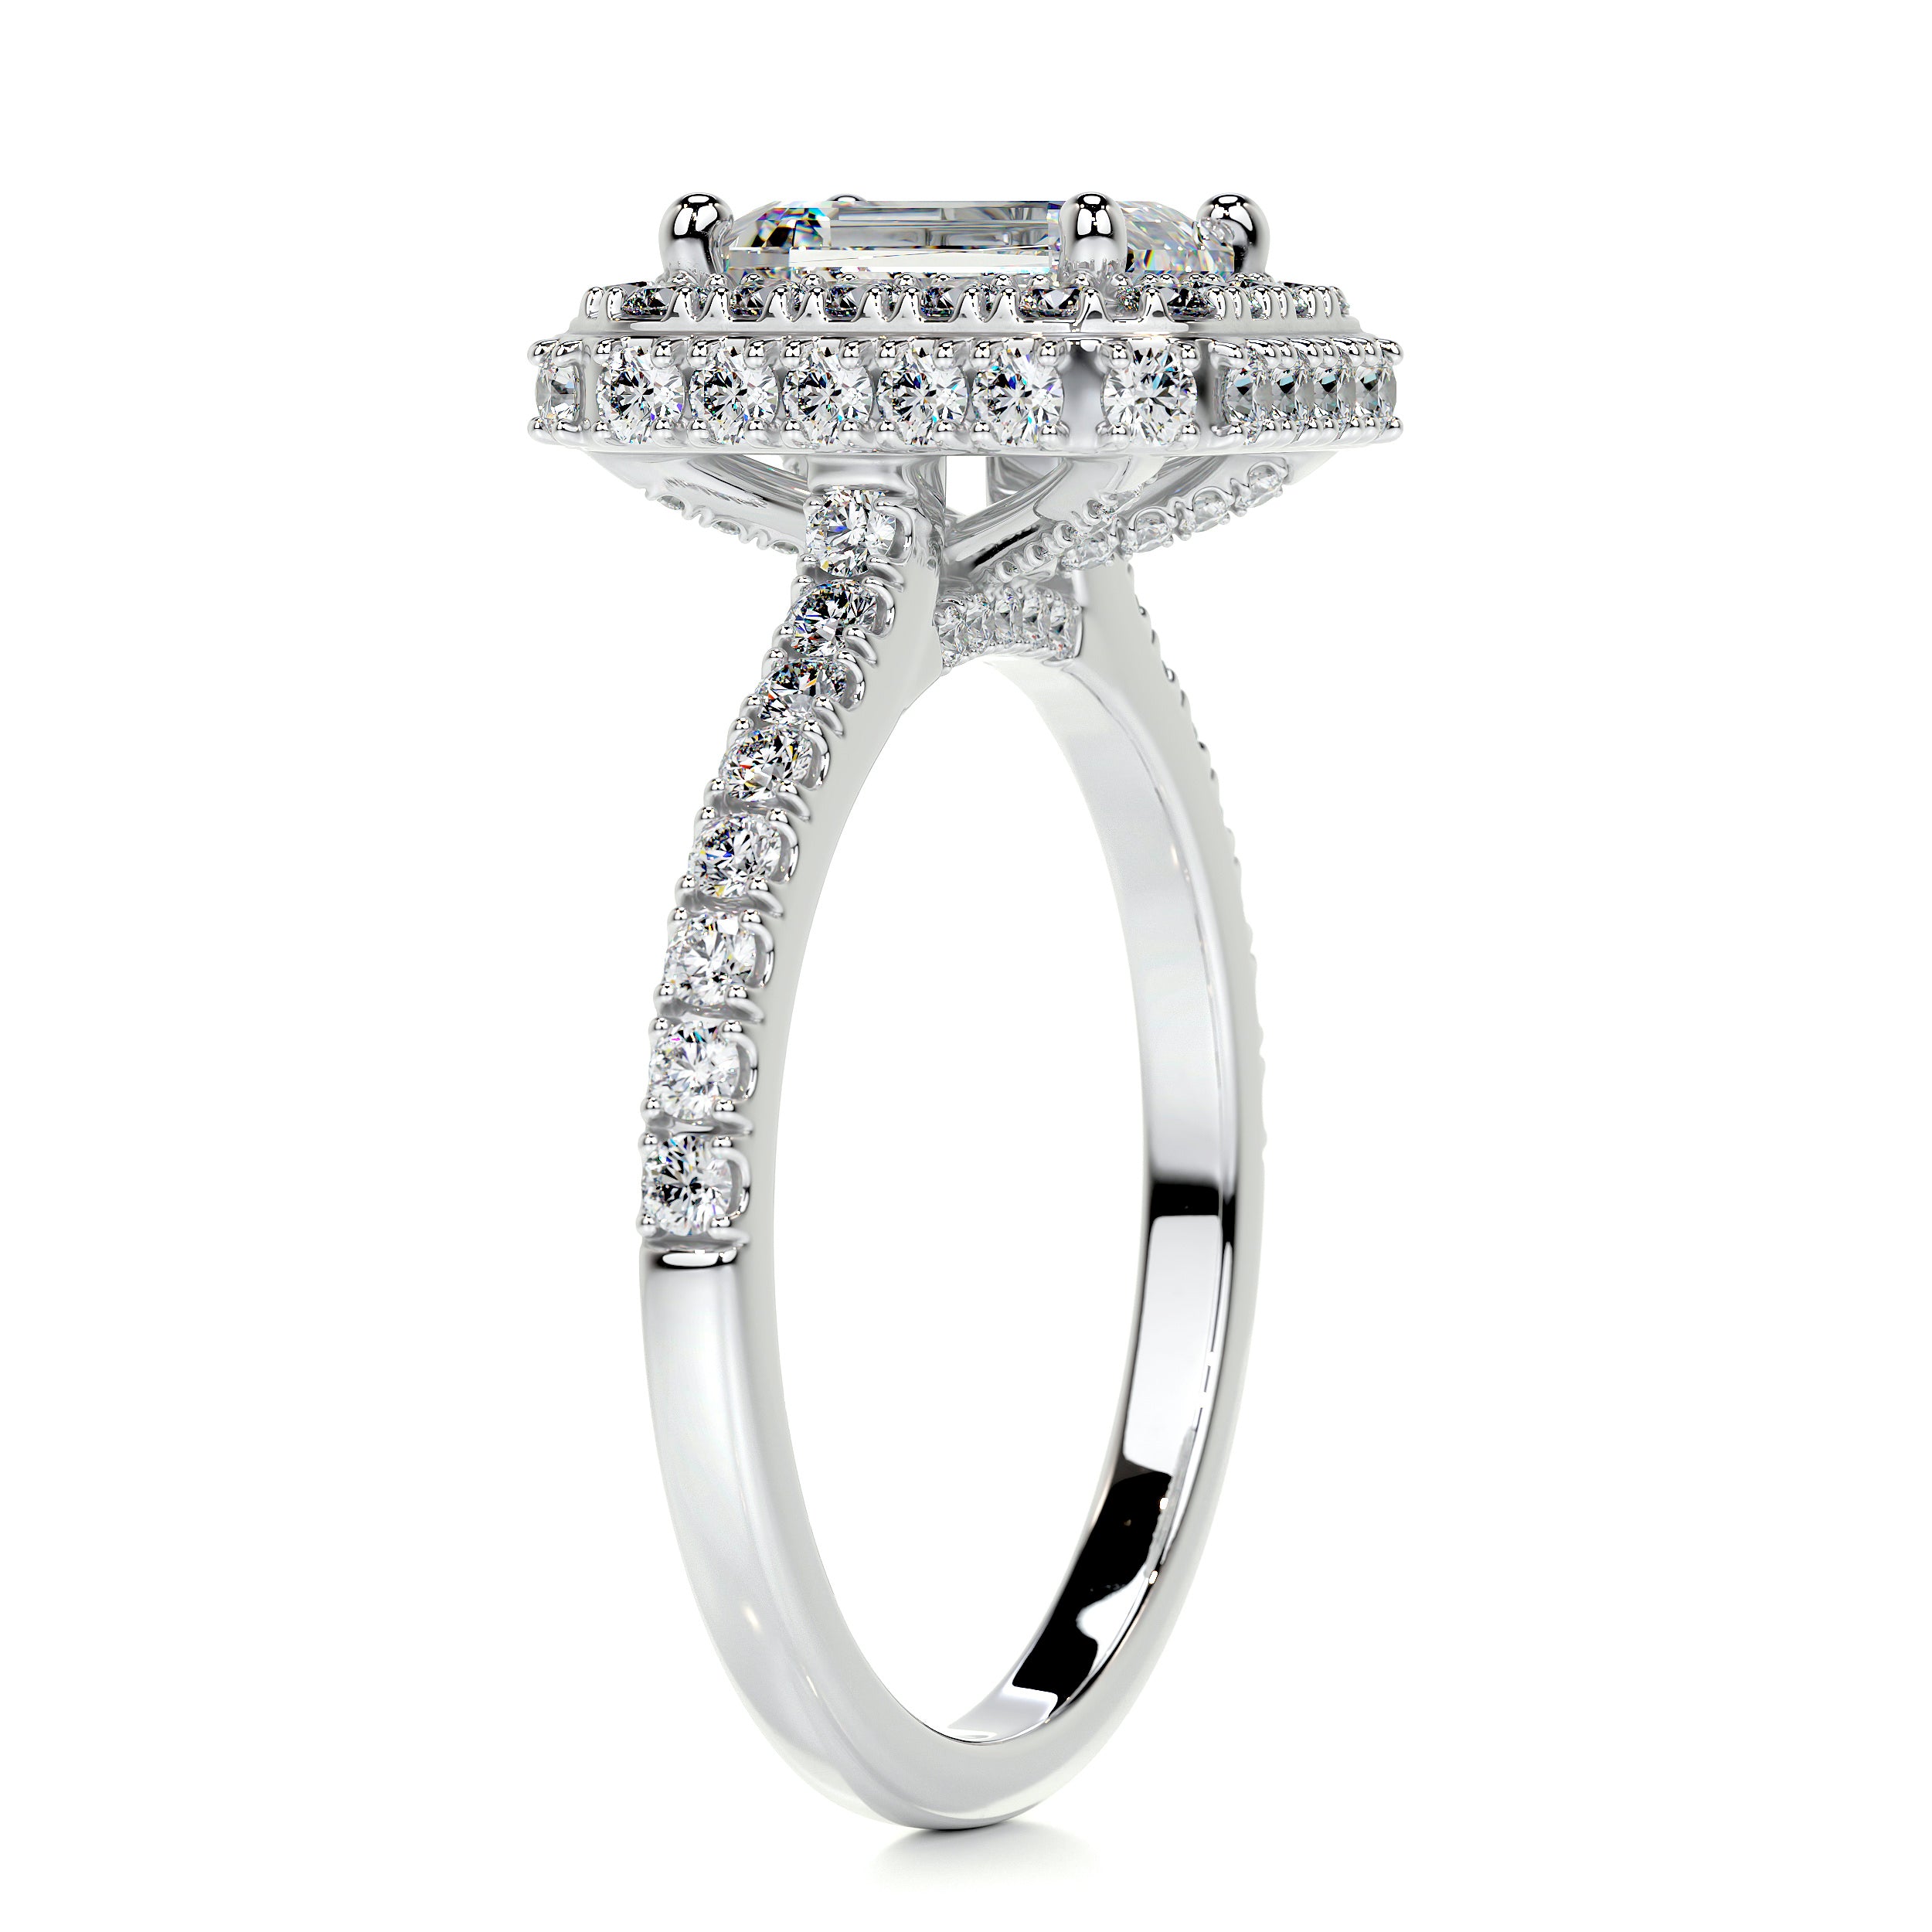 Lana Moissanite & Diamonds Ring   (2.5 Carat) -14K White Gold